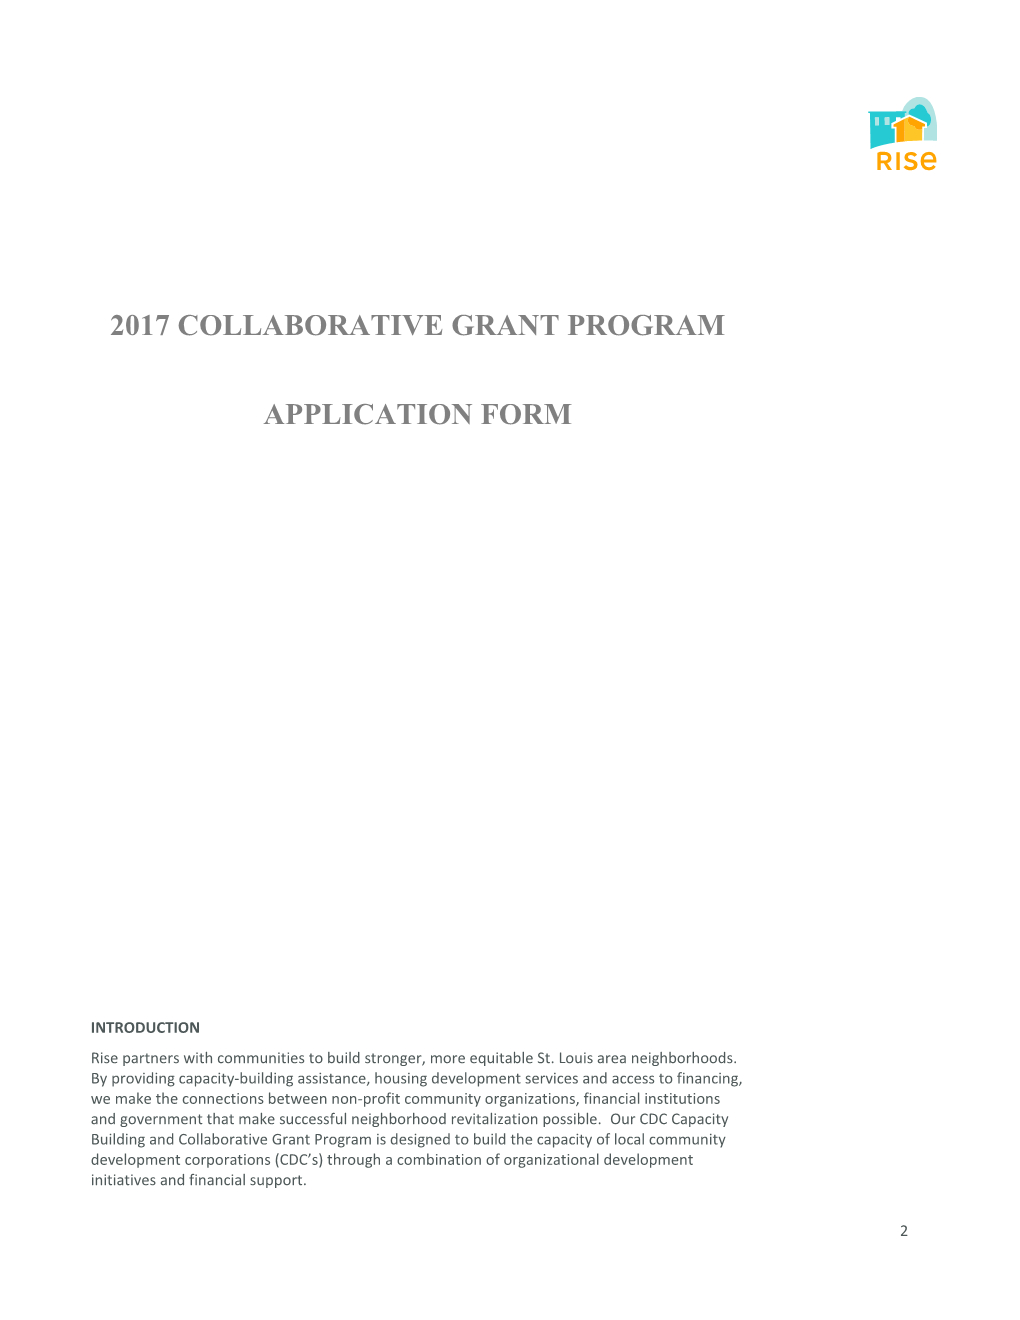 2017 Collaborative Grant Program